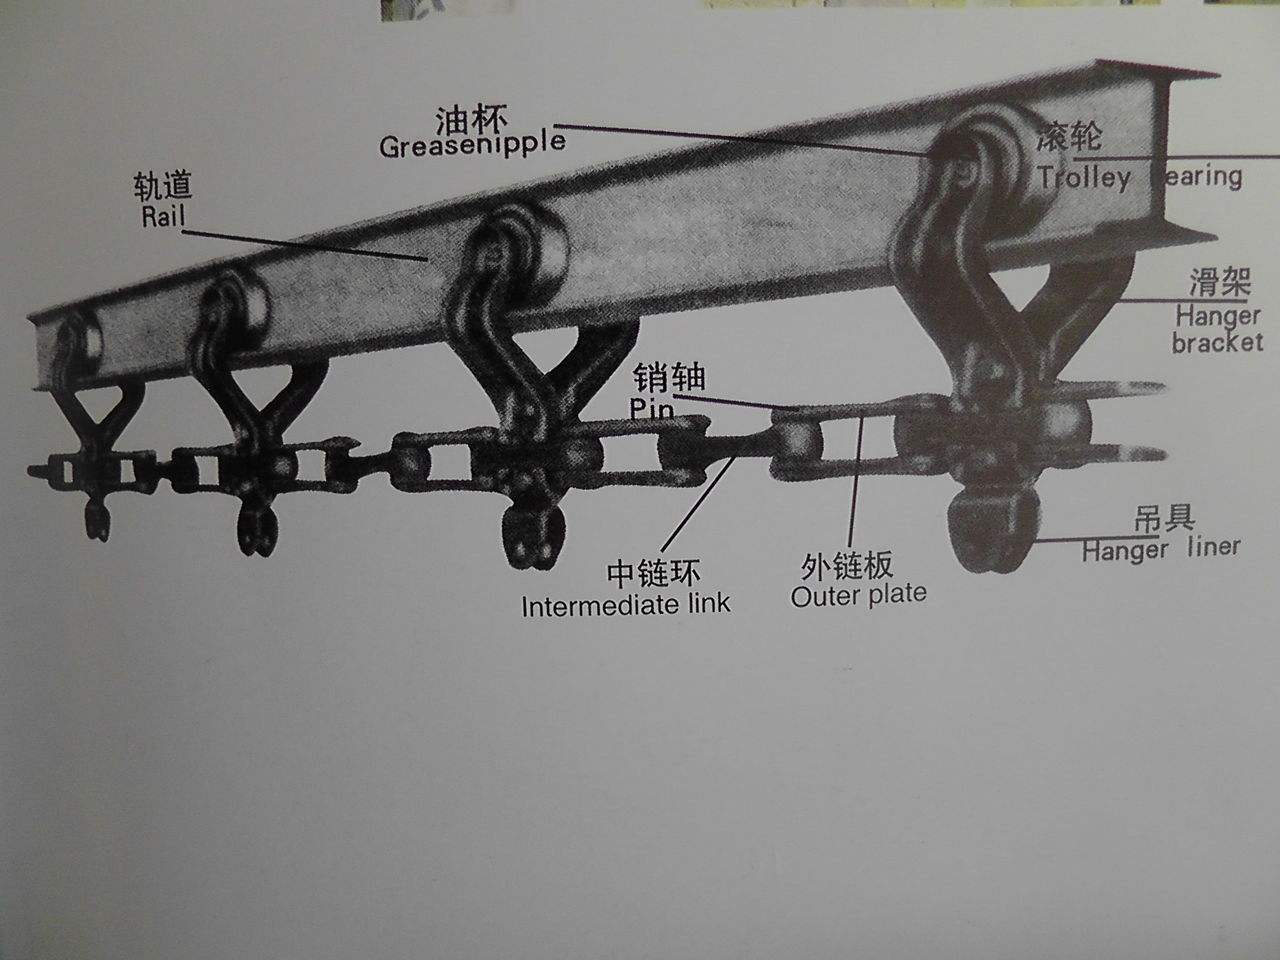 提式悬挂输送机的八大组成部分及其特点详细介绍